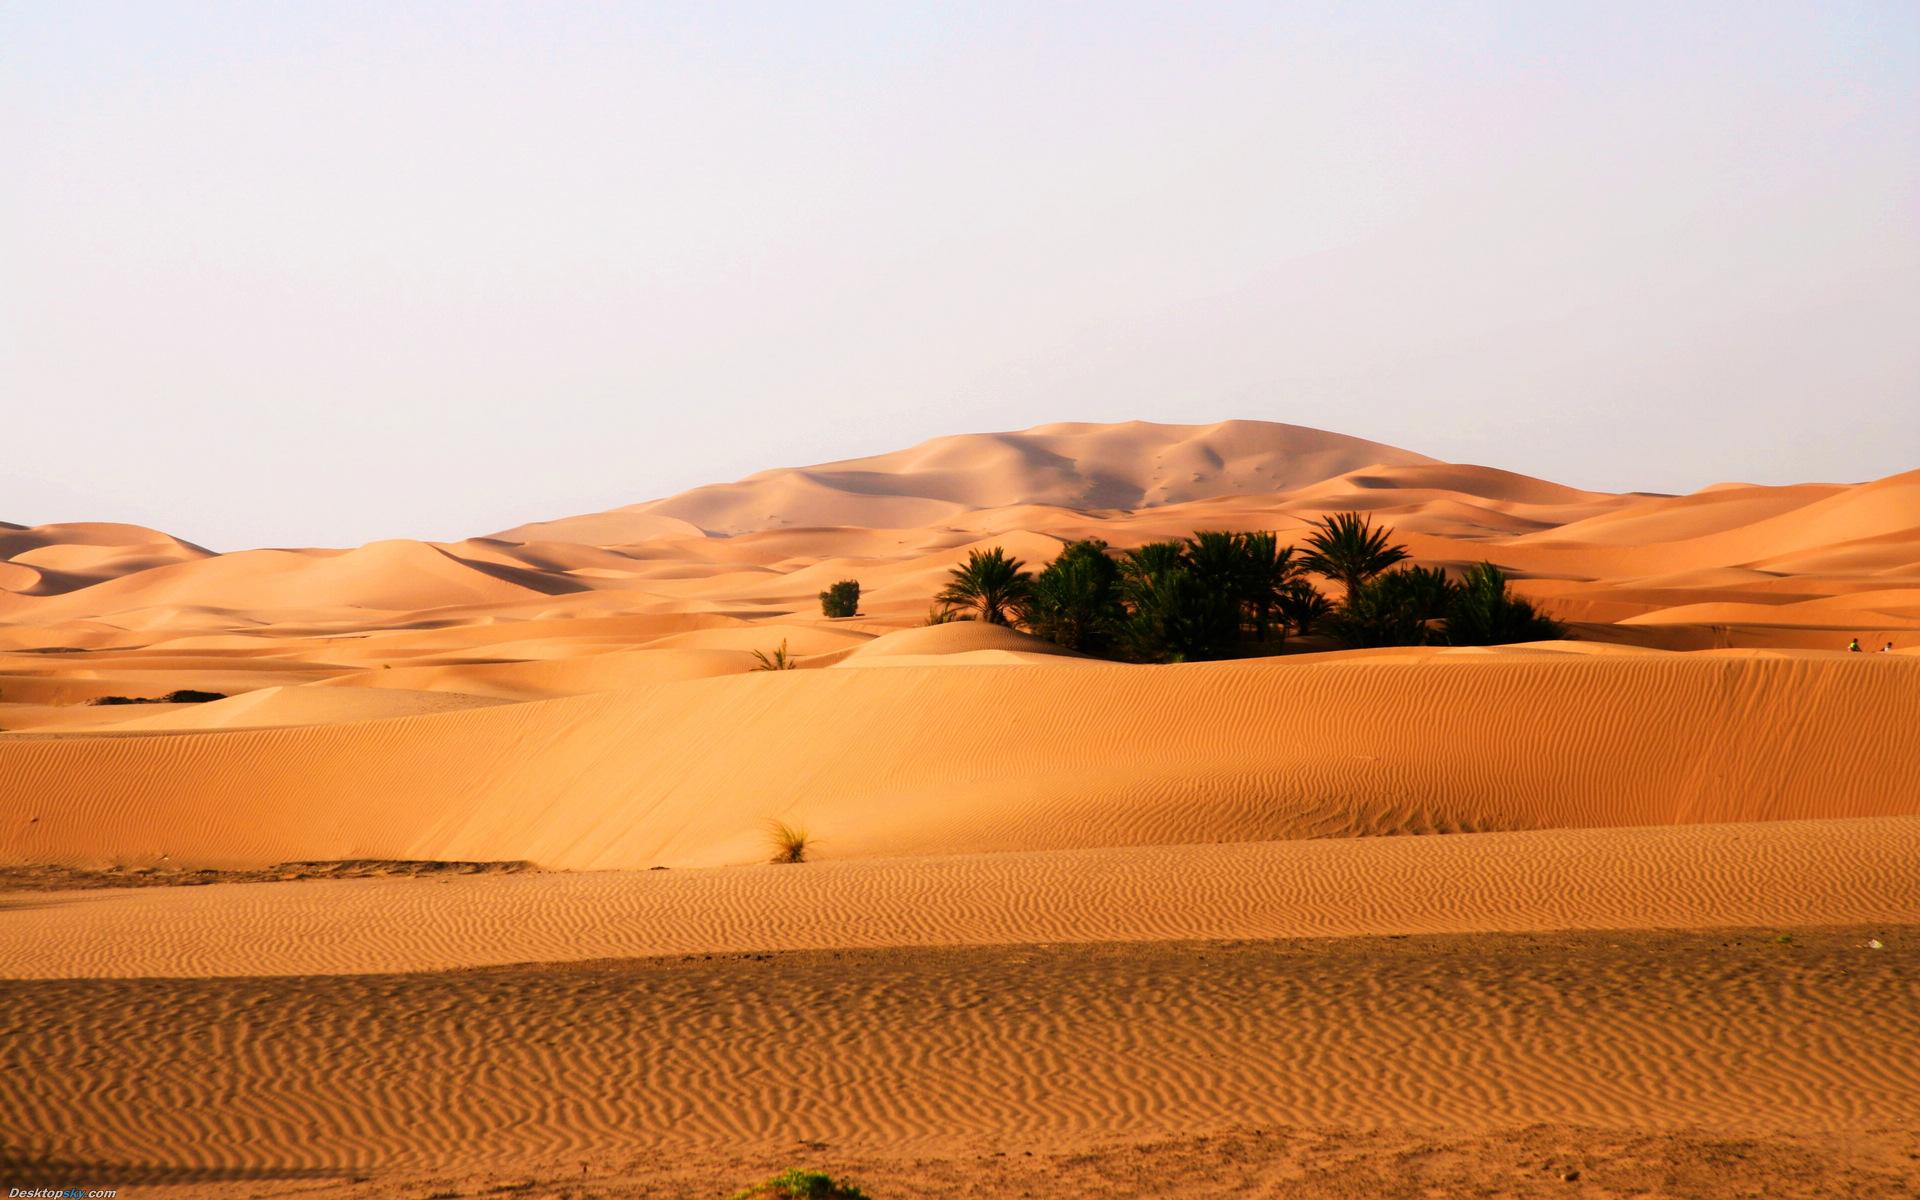 荒漠生态系统——荒漠化是对人类的严峻挑战